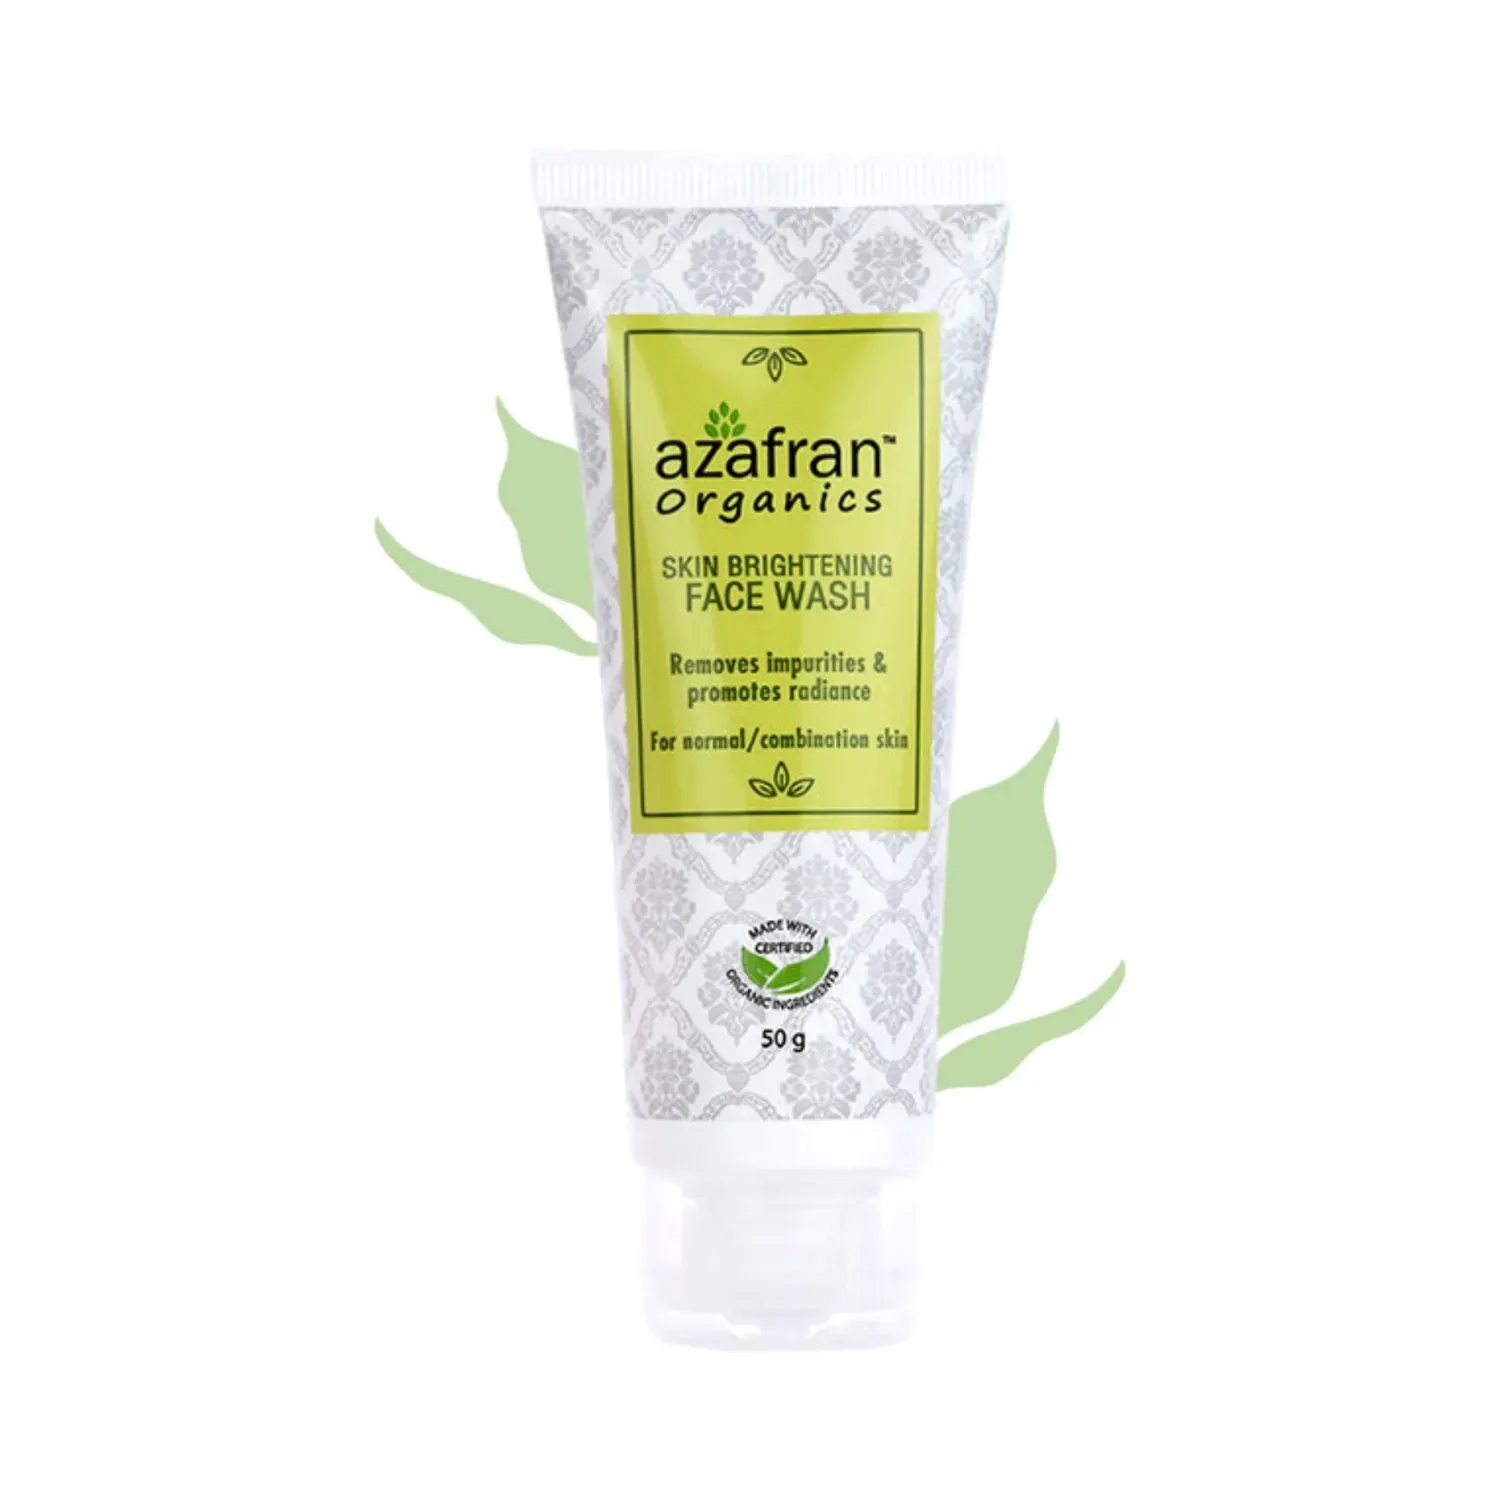 Azafran Organics | Azafran Organics Skin Brightening Face Wash (50g)